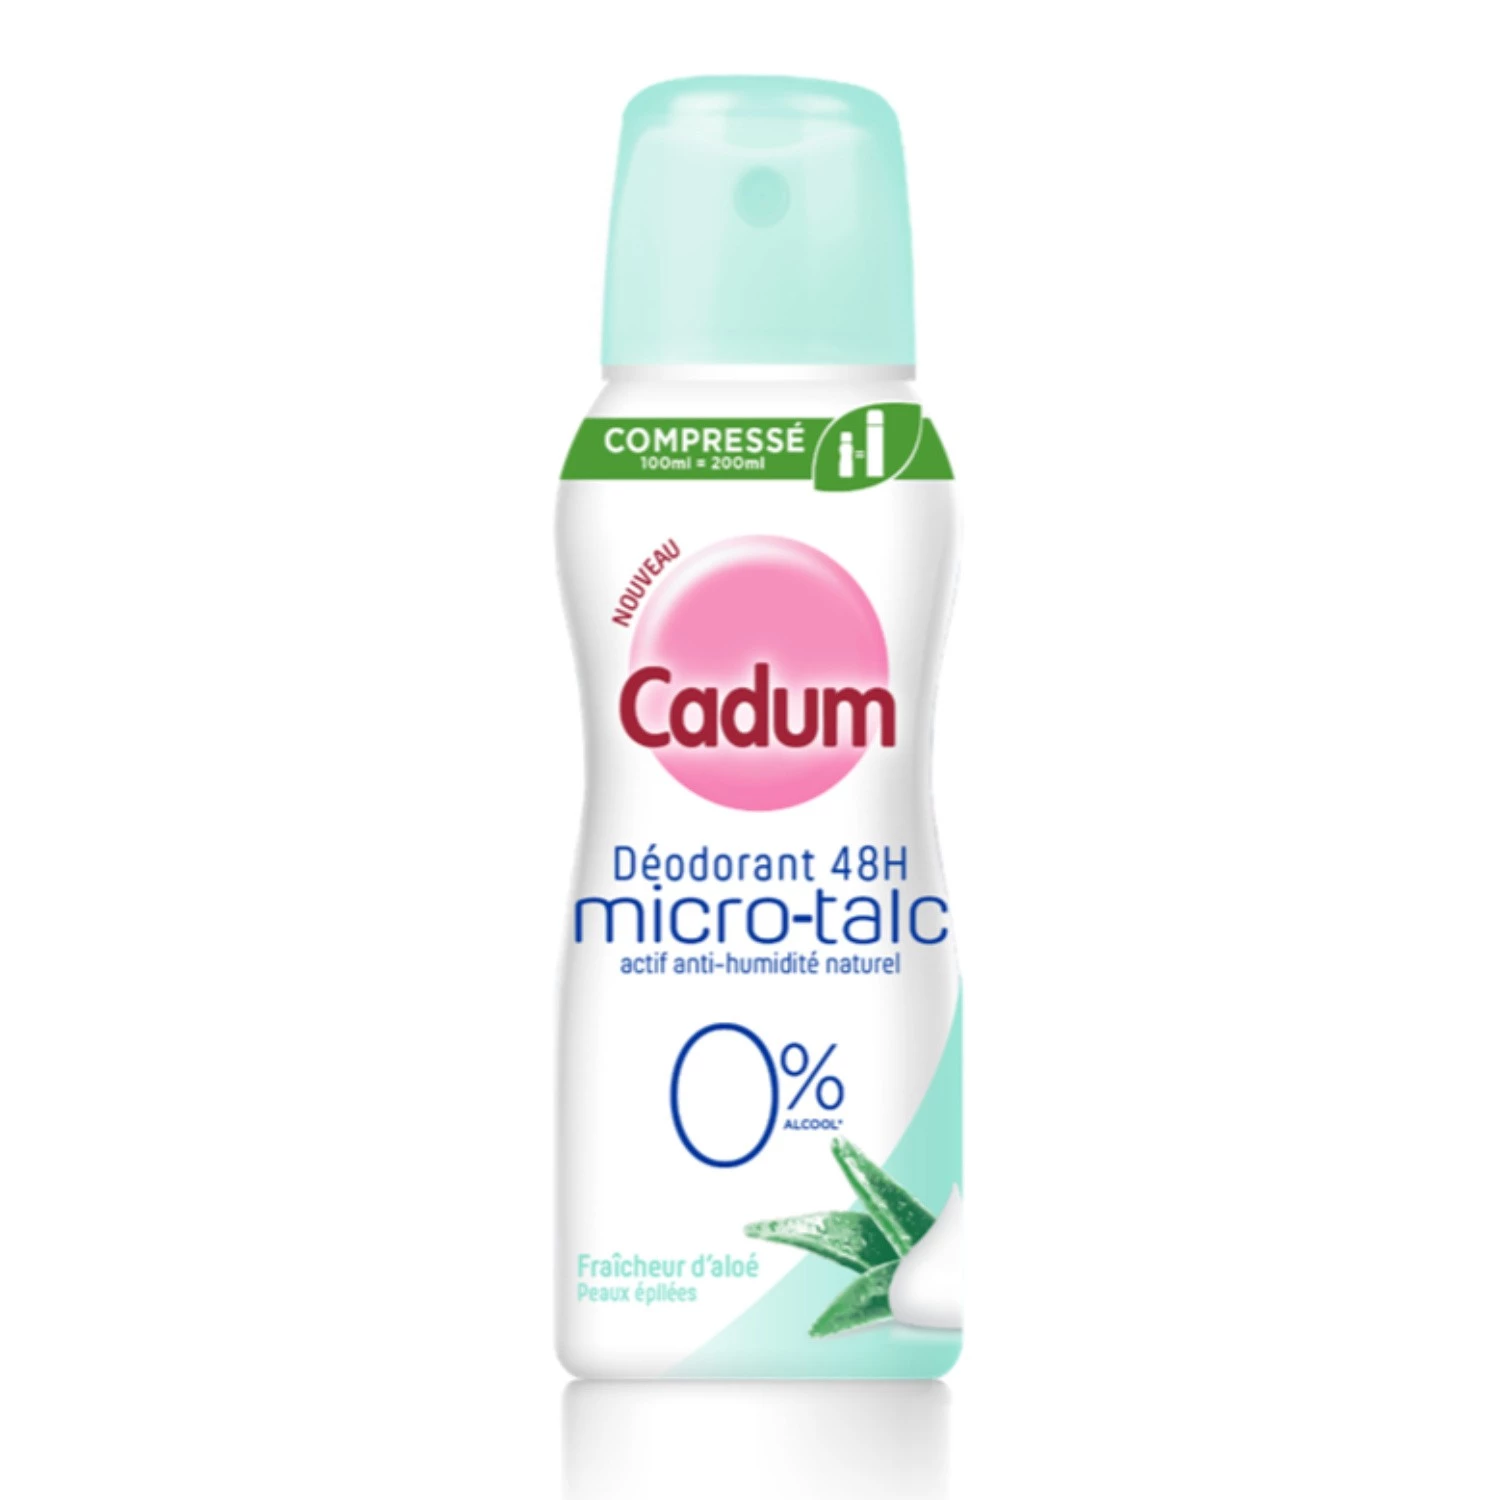 Komprimiertes Deodorant 4 Stunden Mikrotalk Frische von Aloe 100 ml - CADUM